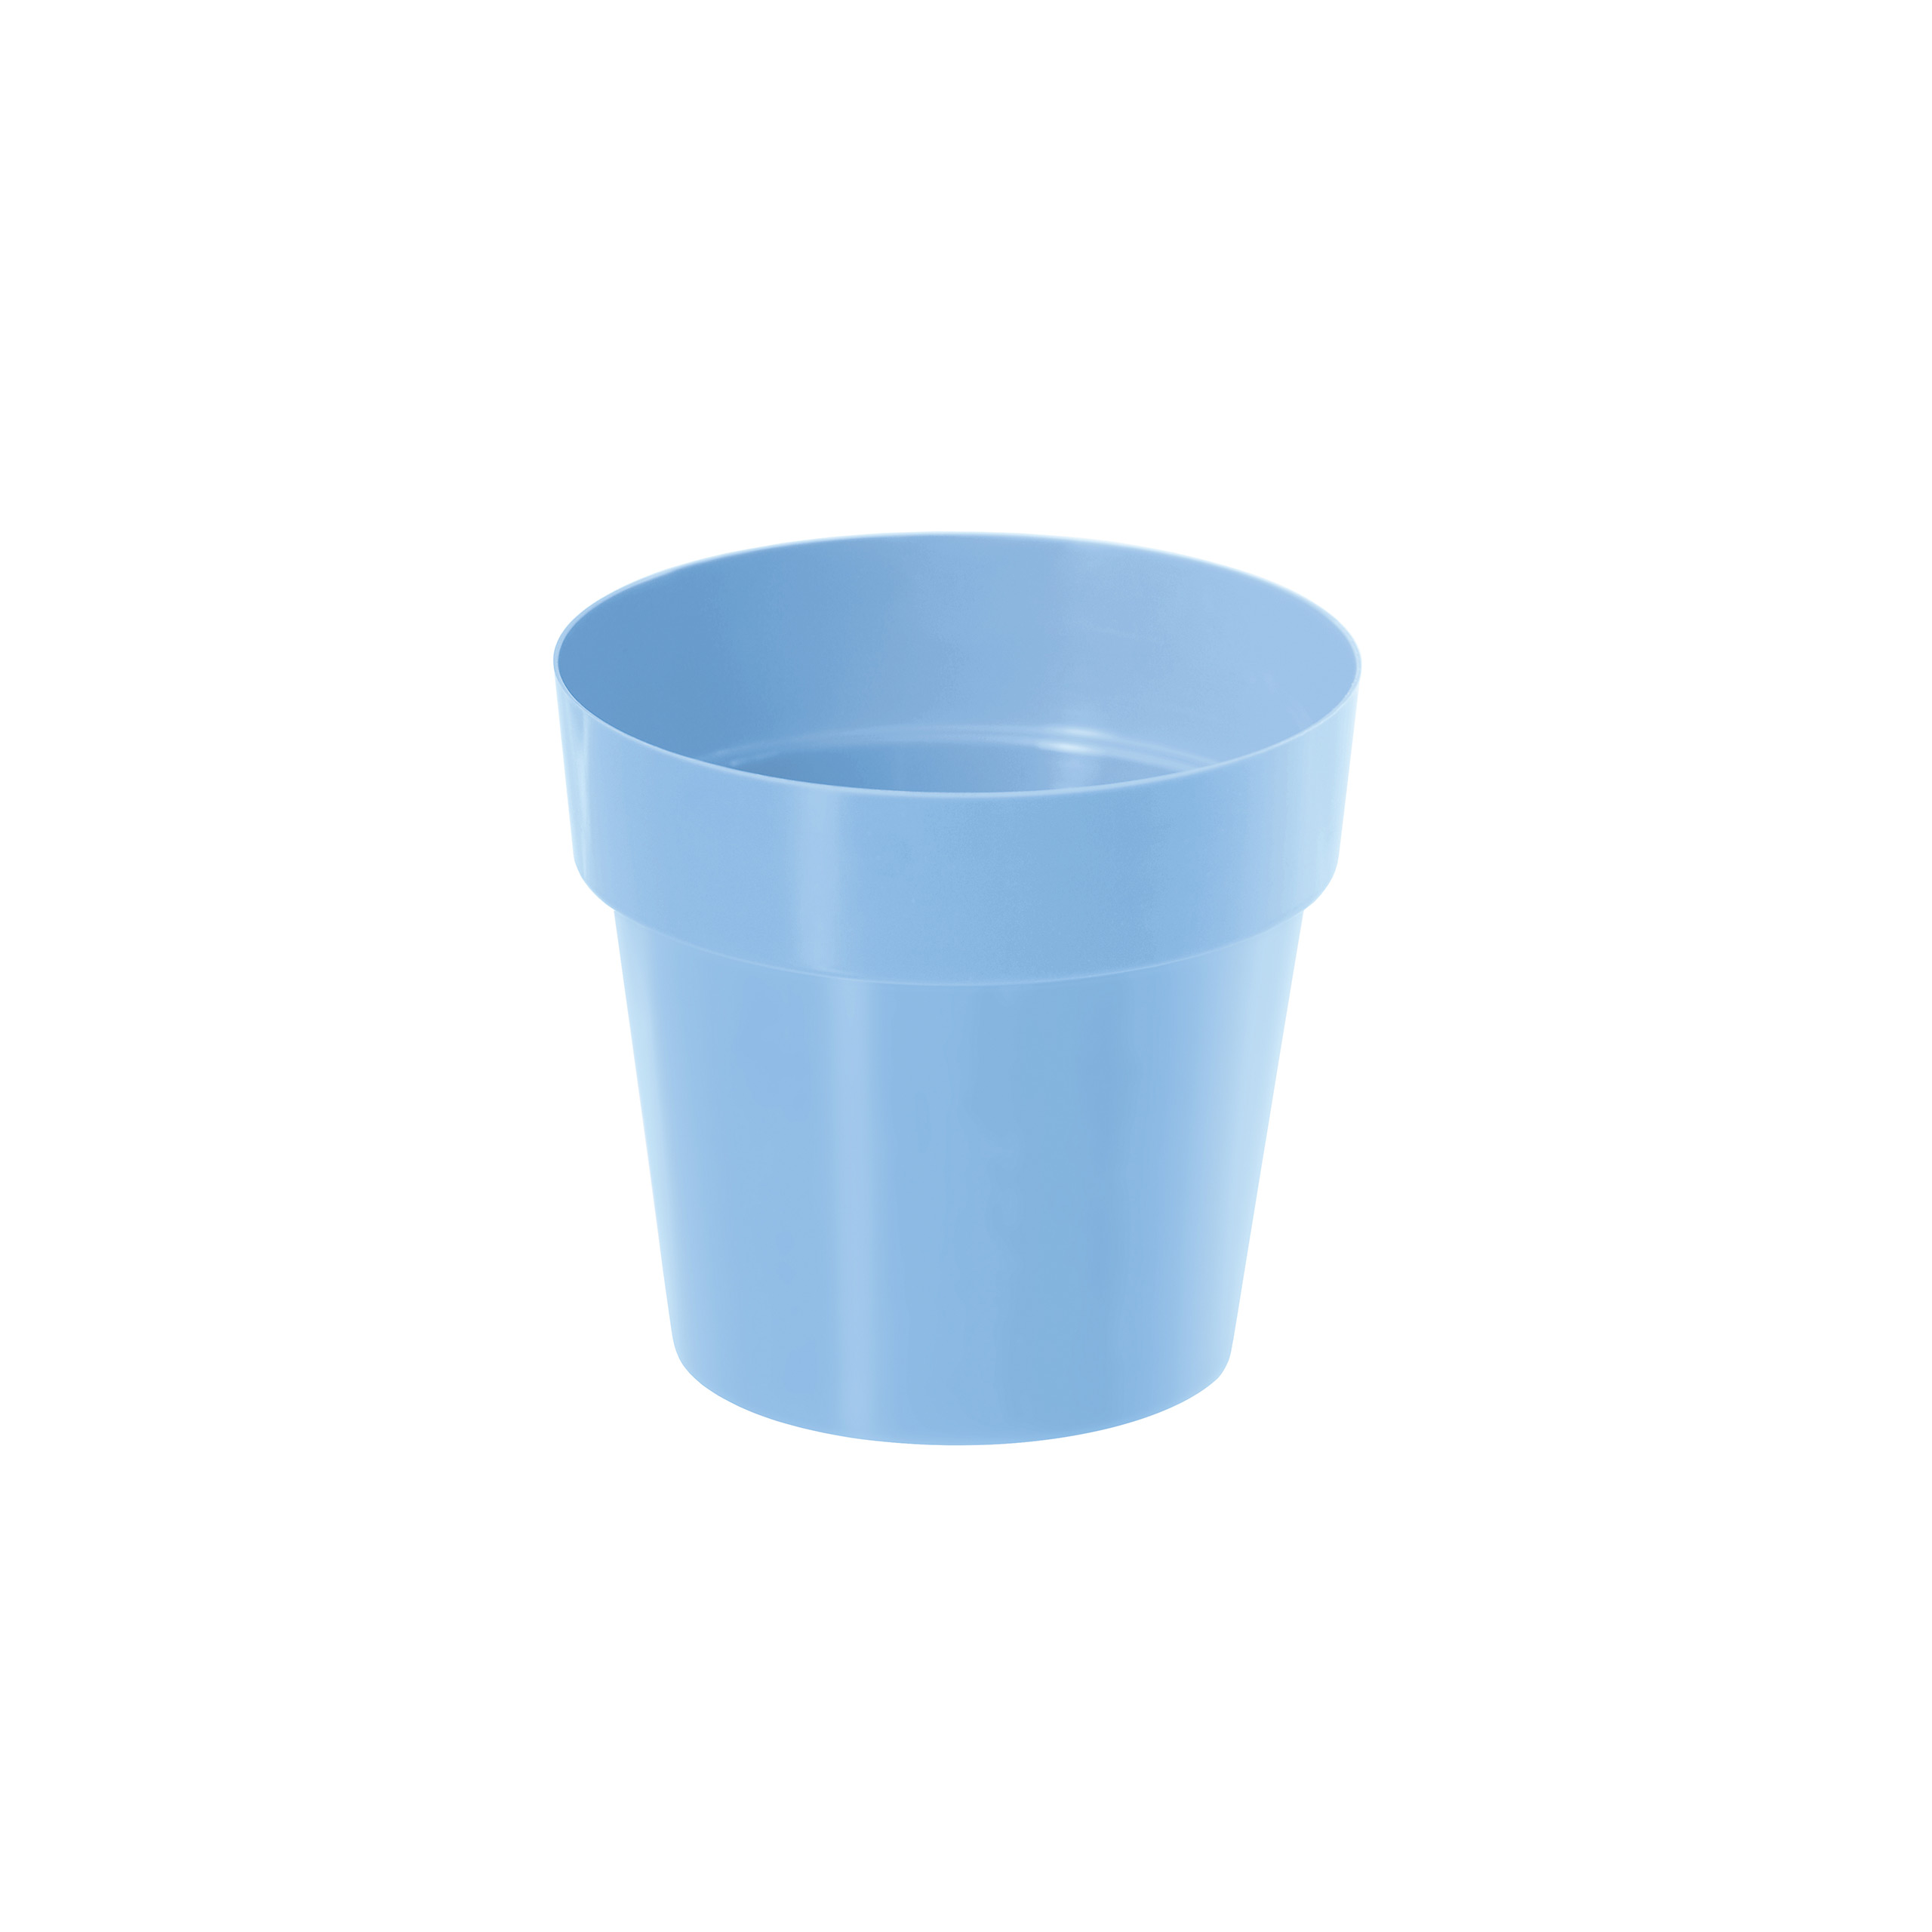 IML flowerpot DR160 Blue